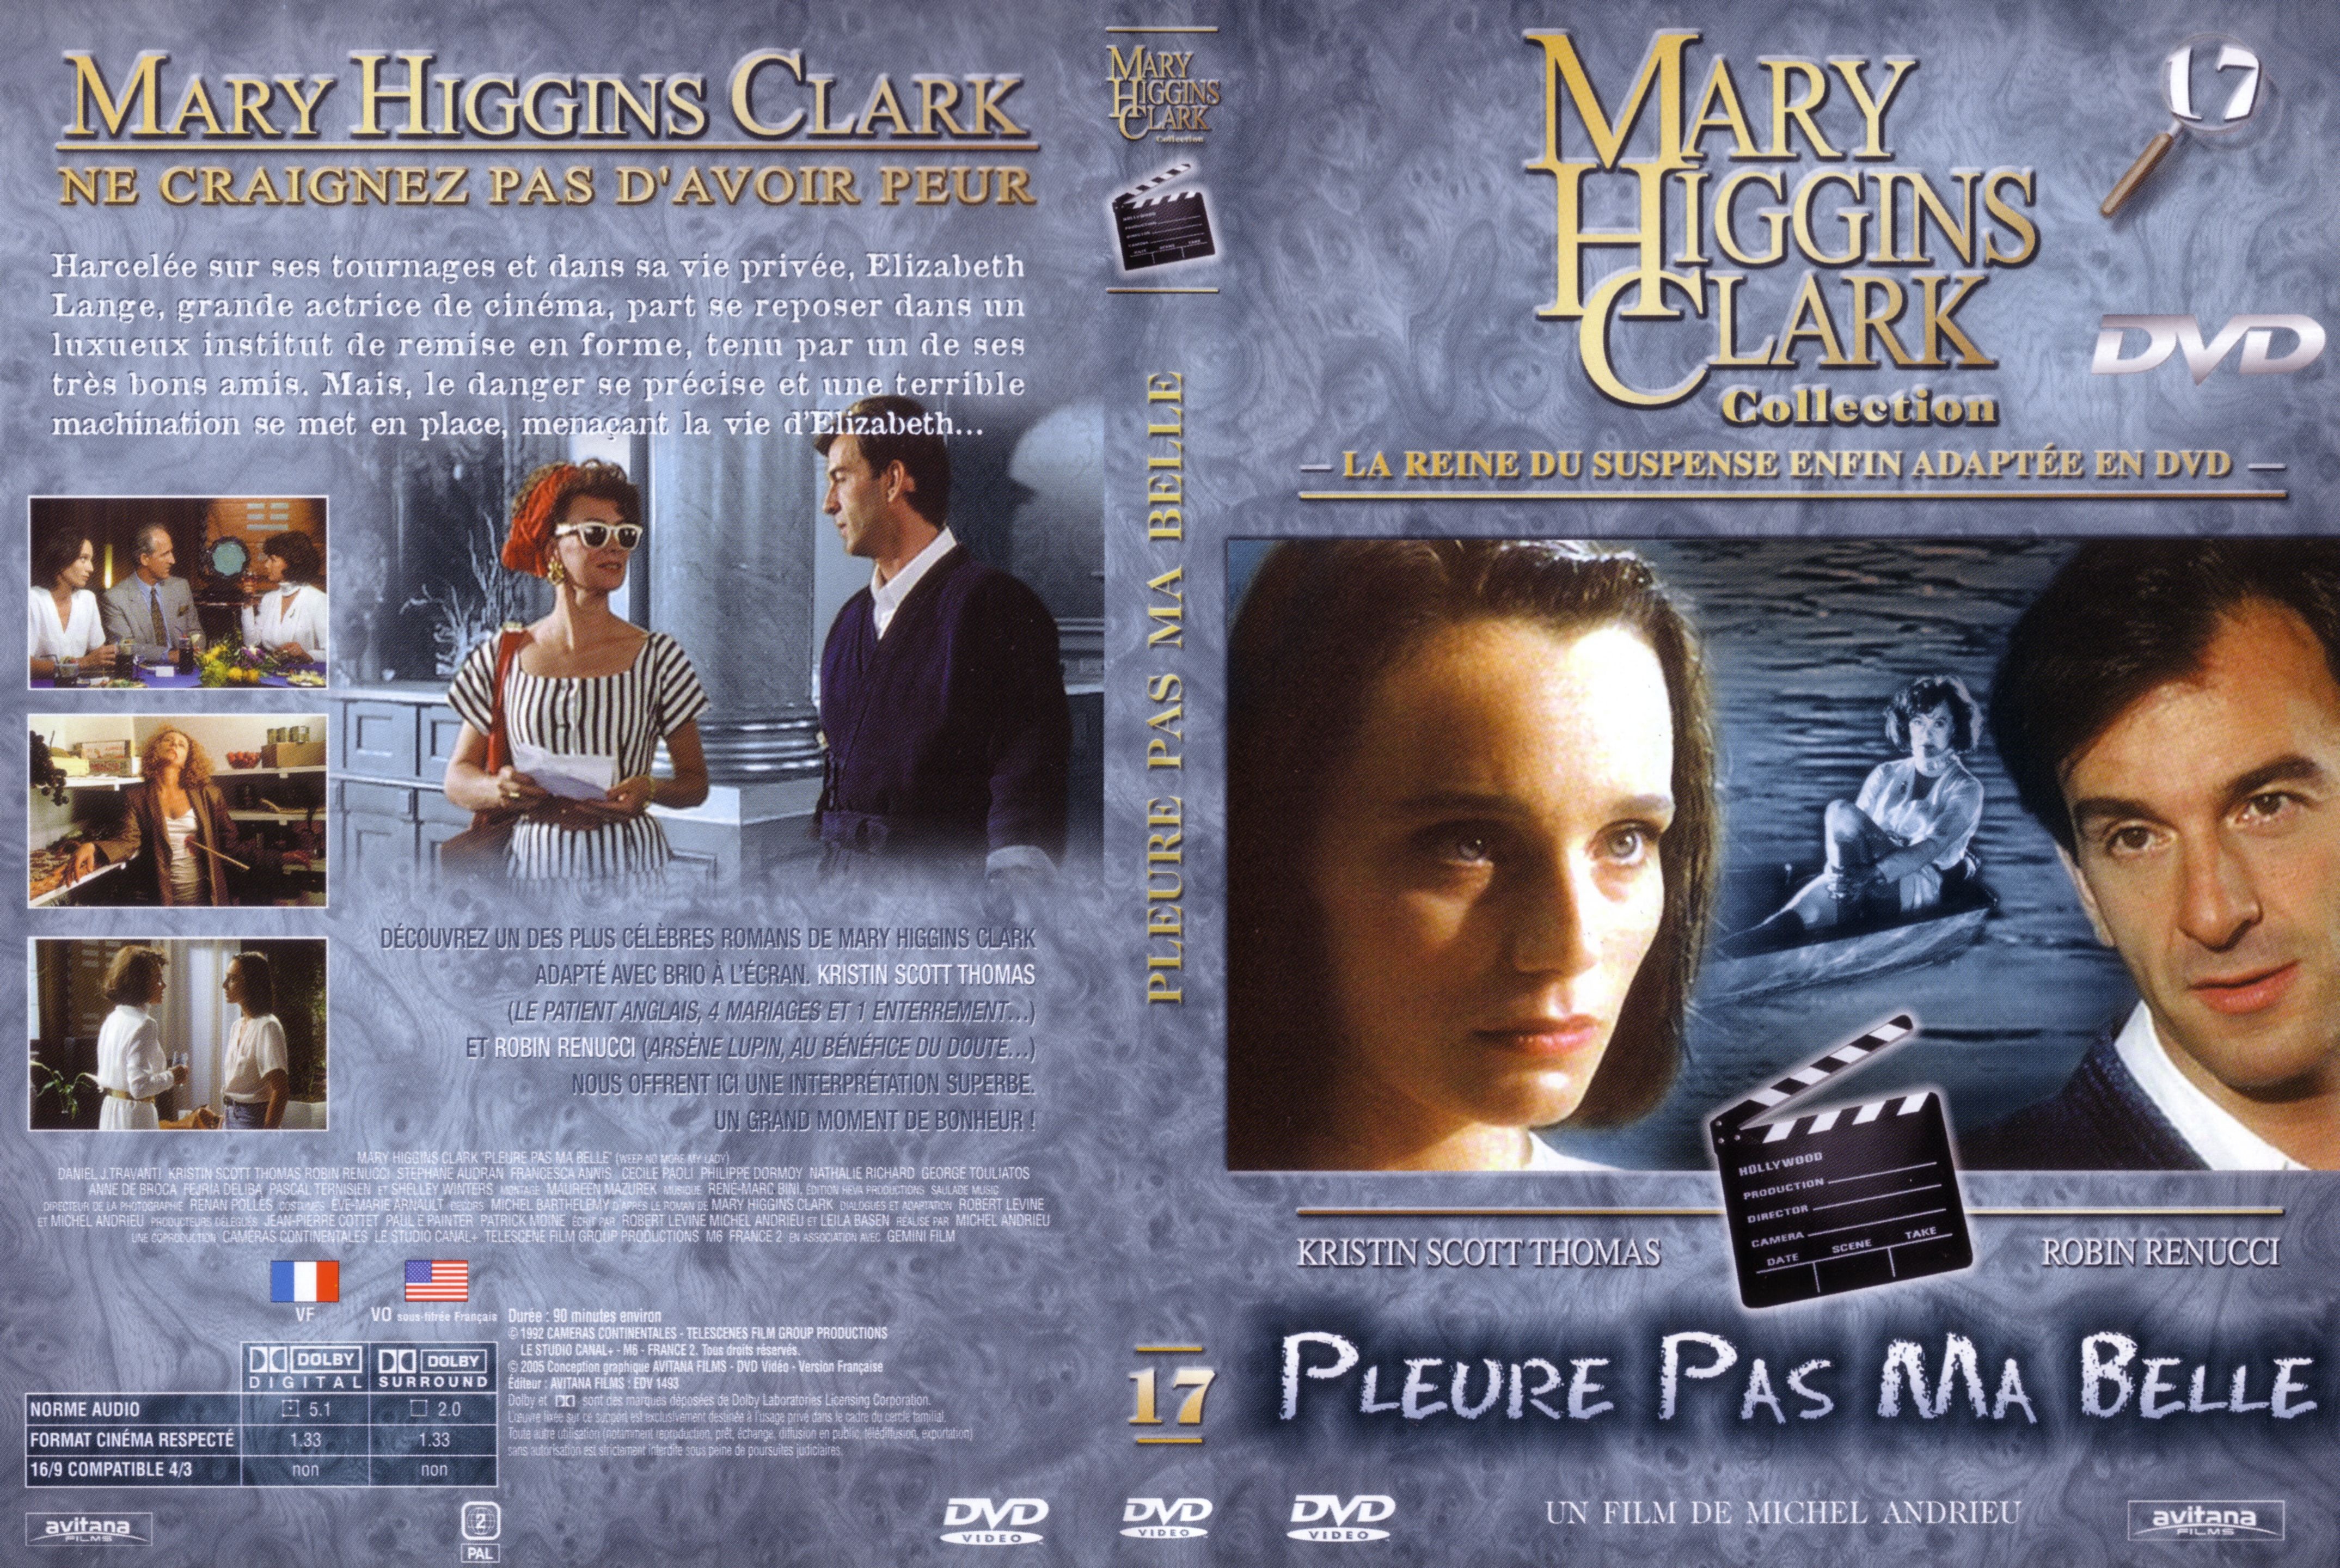 Jaquette DVD de Mary Higgins Clark vol 17 - Pleure pas ma belle - Cinéma Passion4298 x 2880